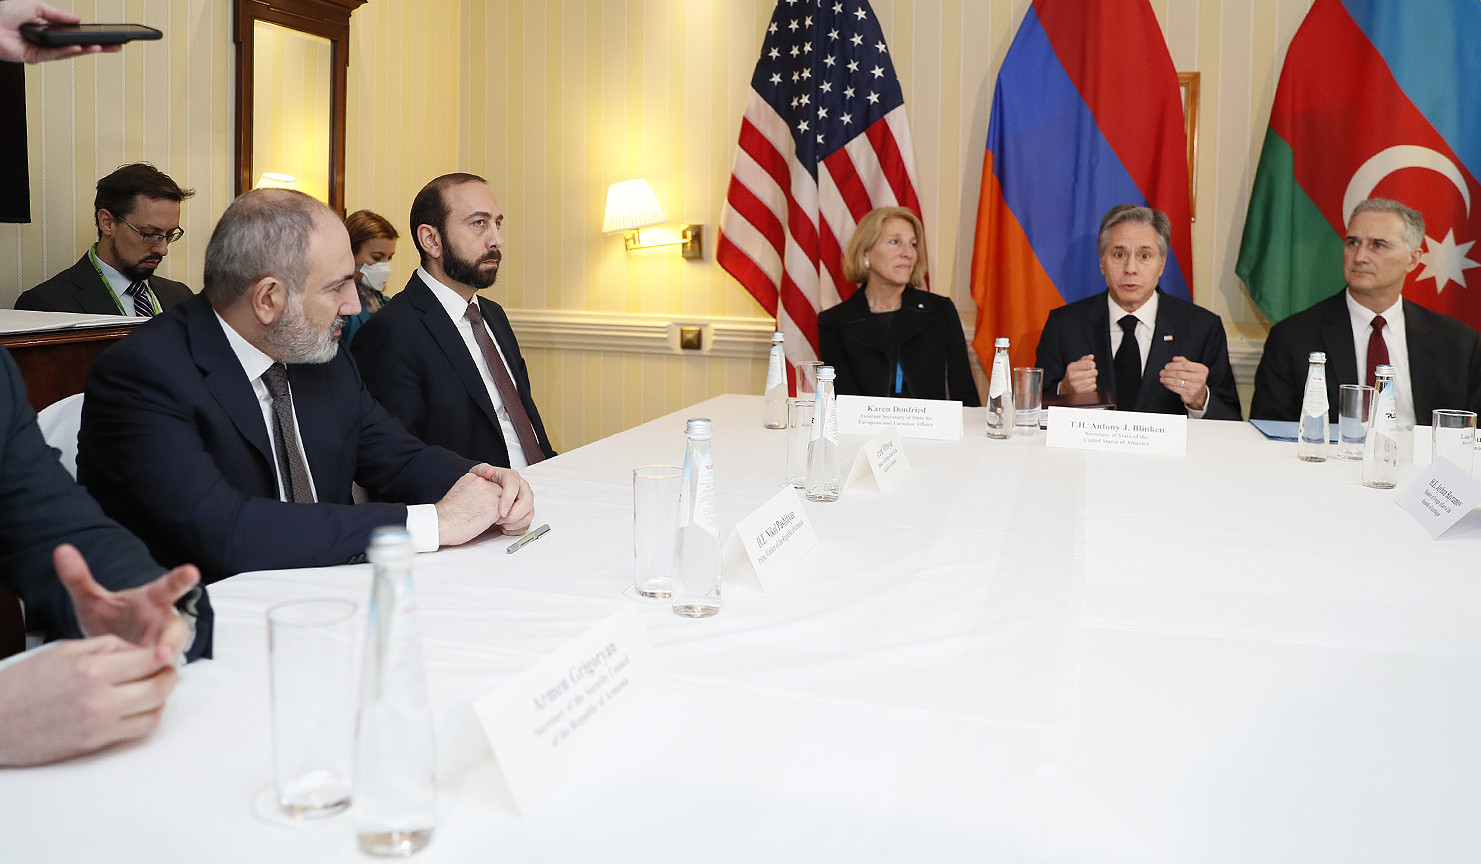 Մյունխենում տեղի է ունեցել ՀՀ վարչապետի, ԱՄՆ պետքարտուղարի և Ադրբեջանի նախագահի հանդիպումը